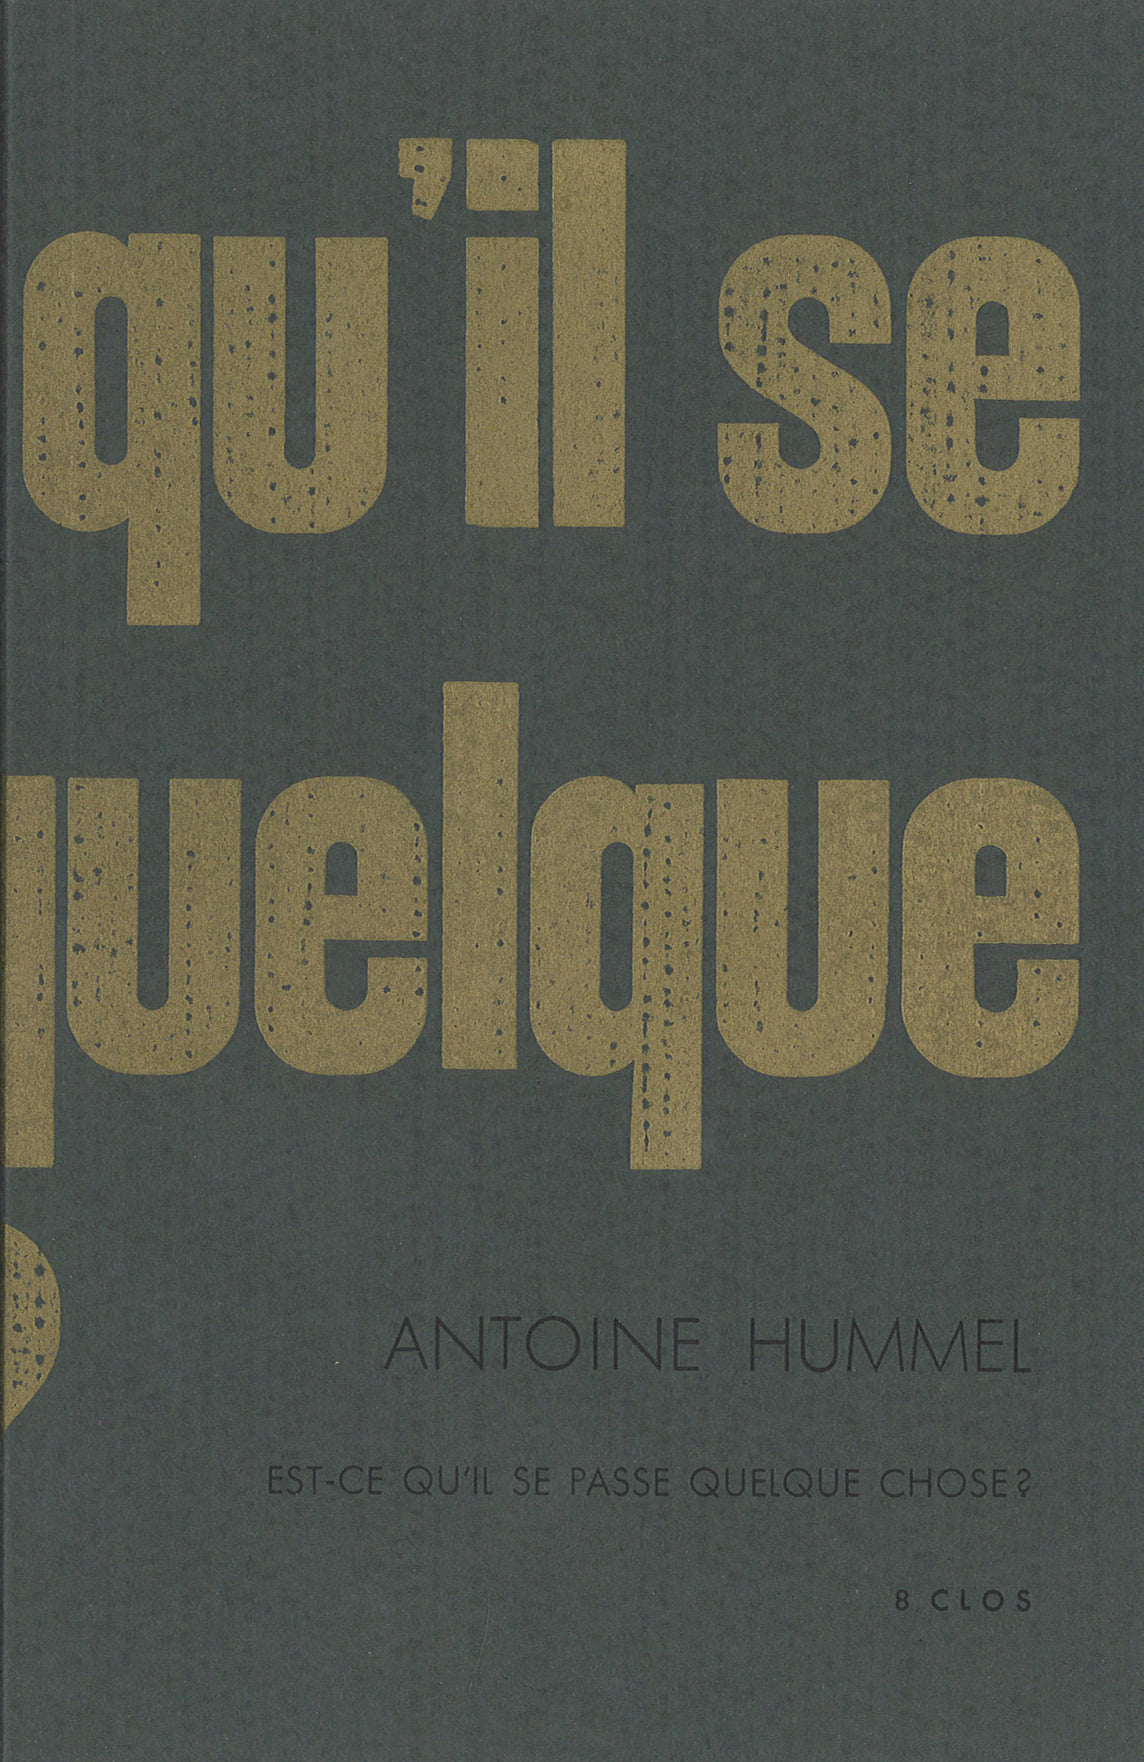 Est-ce qu’il se passe quelque chose ? d’Antoine Hummel 2020 13×20 cm, 103 p., 10€ isbn : 978−2−9573340−0−1